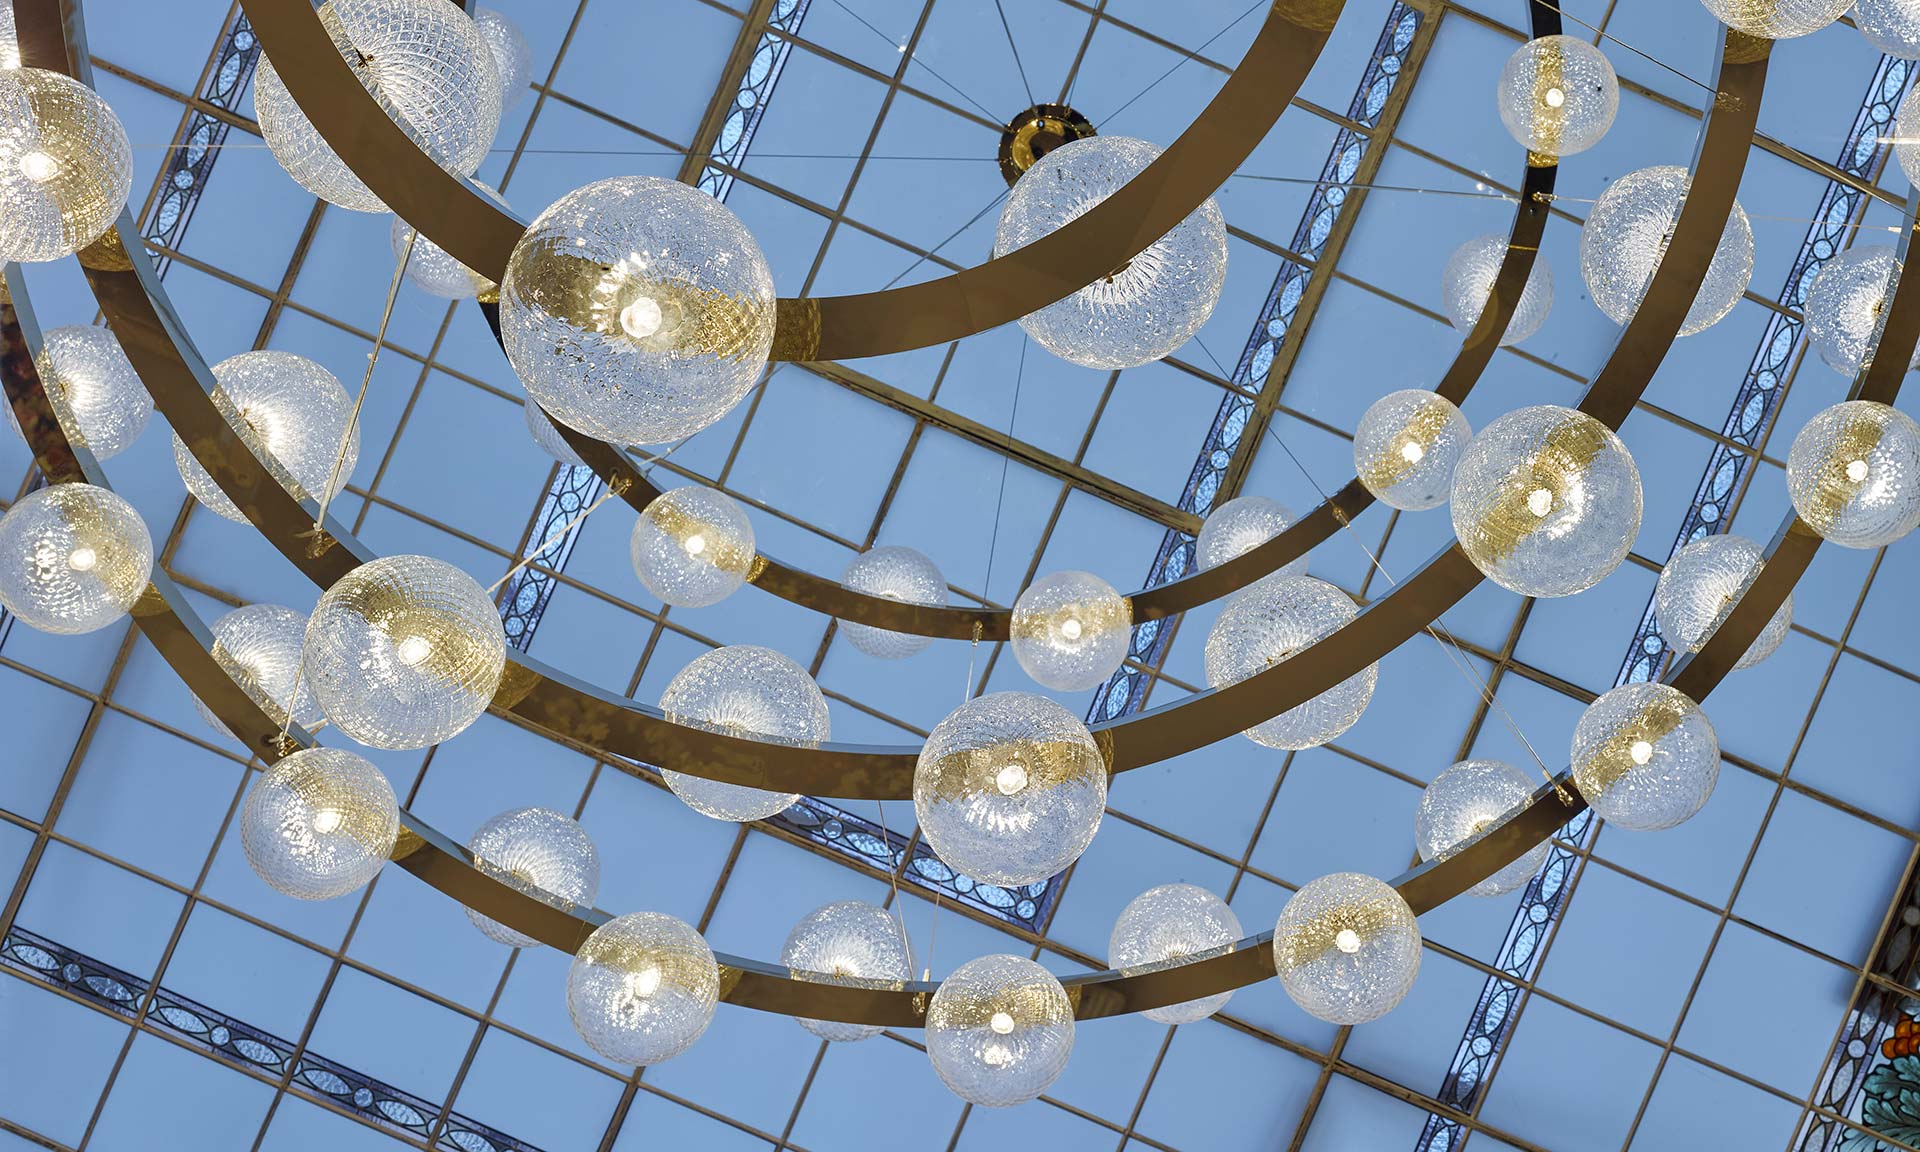 Preciosa vytvořila monumentální svítidlo Bubble Rings pro Grandhotel Pupp v Karlových Varech